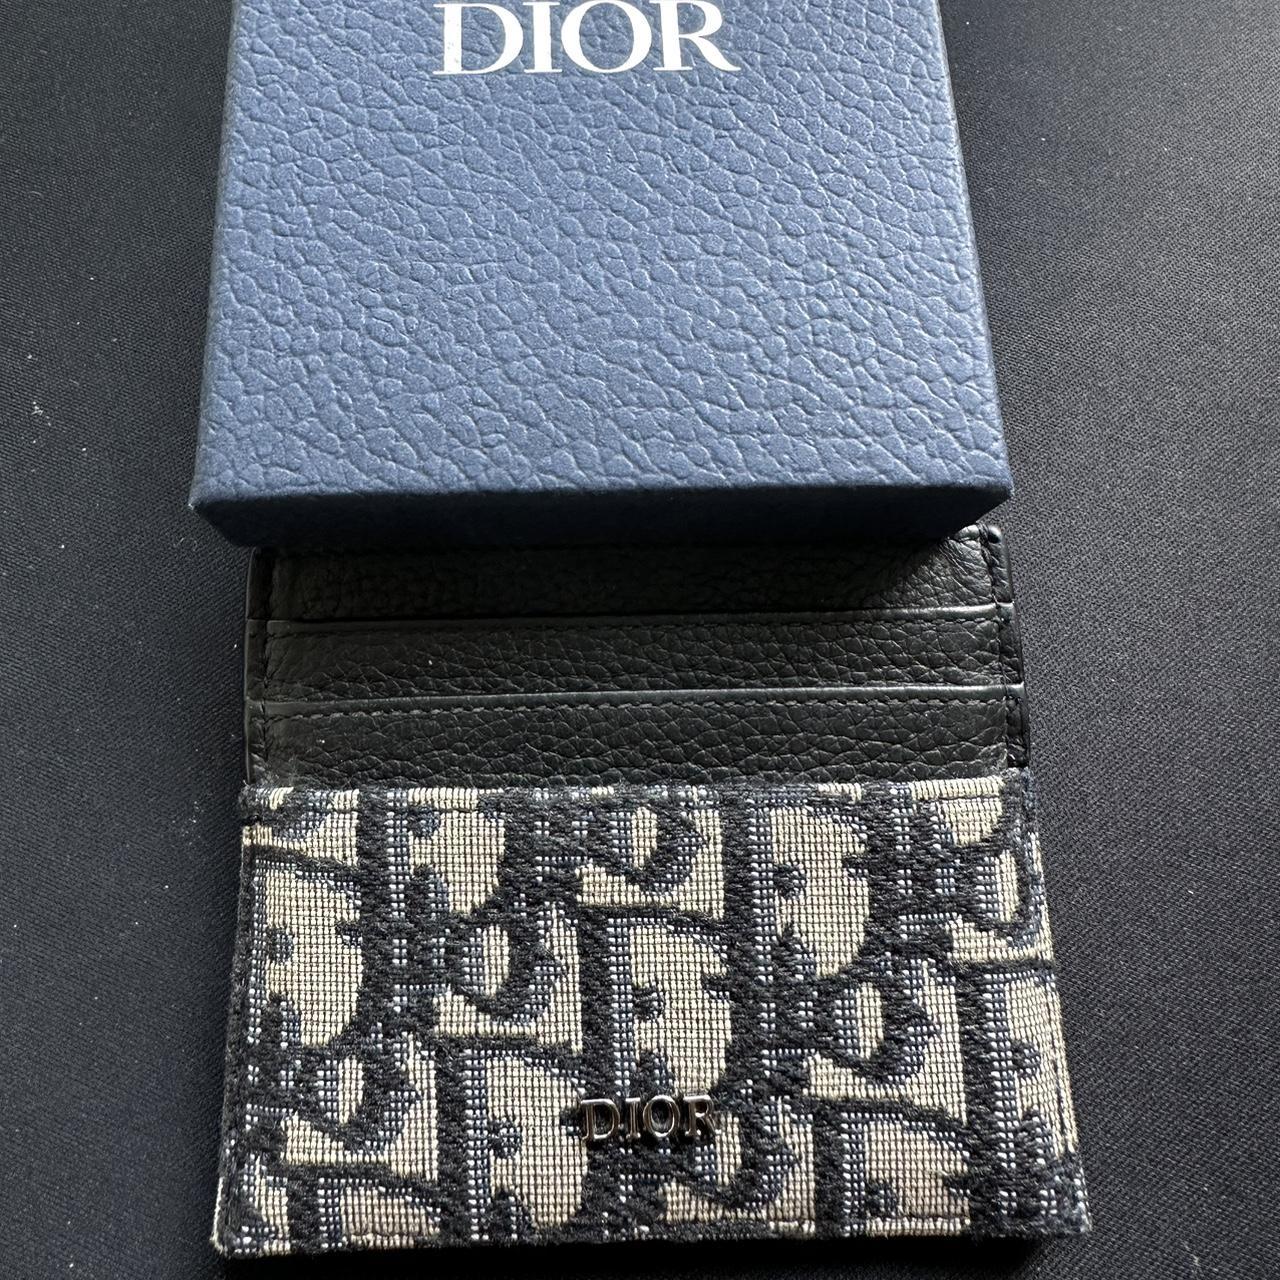 Dior SLG Card Holder 6 Oblique Jacquard. If bought,... - Depop